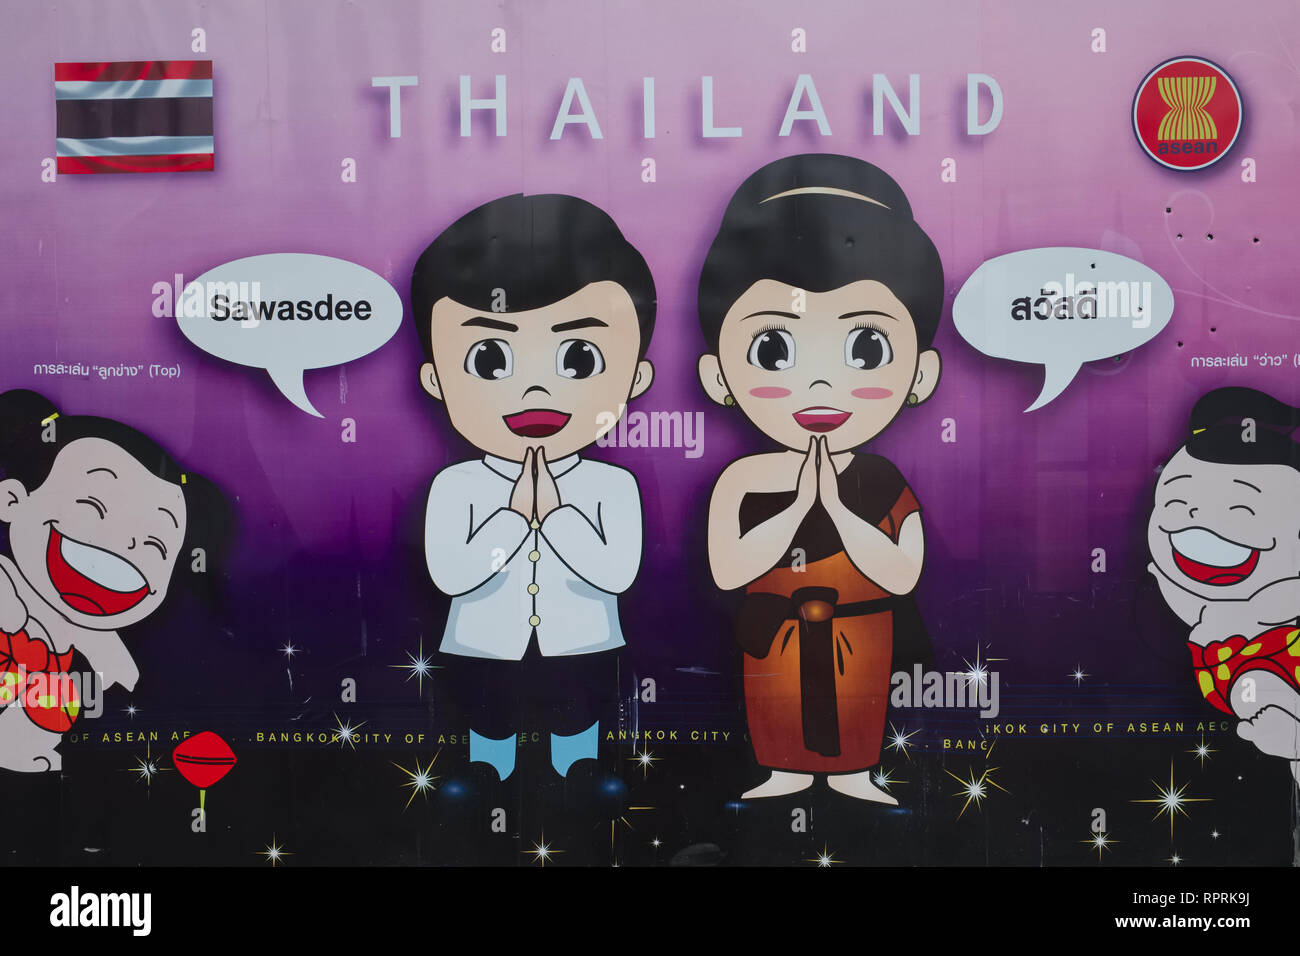 Ein Poster während der APEC Ereignis Darstellung stereotyper Thai Aspekte: Die traditionelle thailändische Begrüßung des awasdee" und das Thailändische Lächeln; Bangkok, Thailand Stockfoto